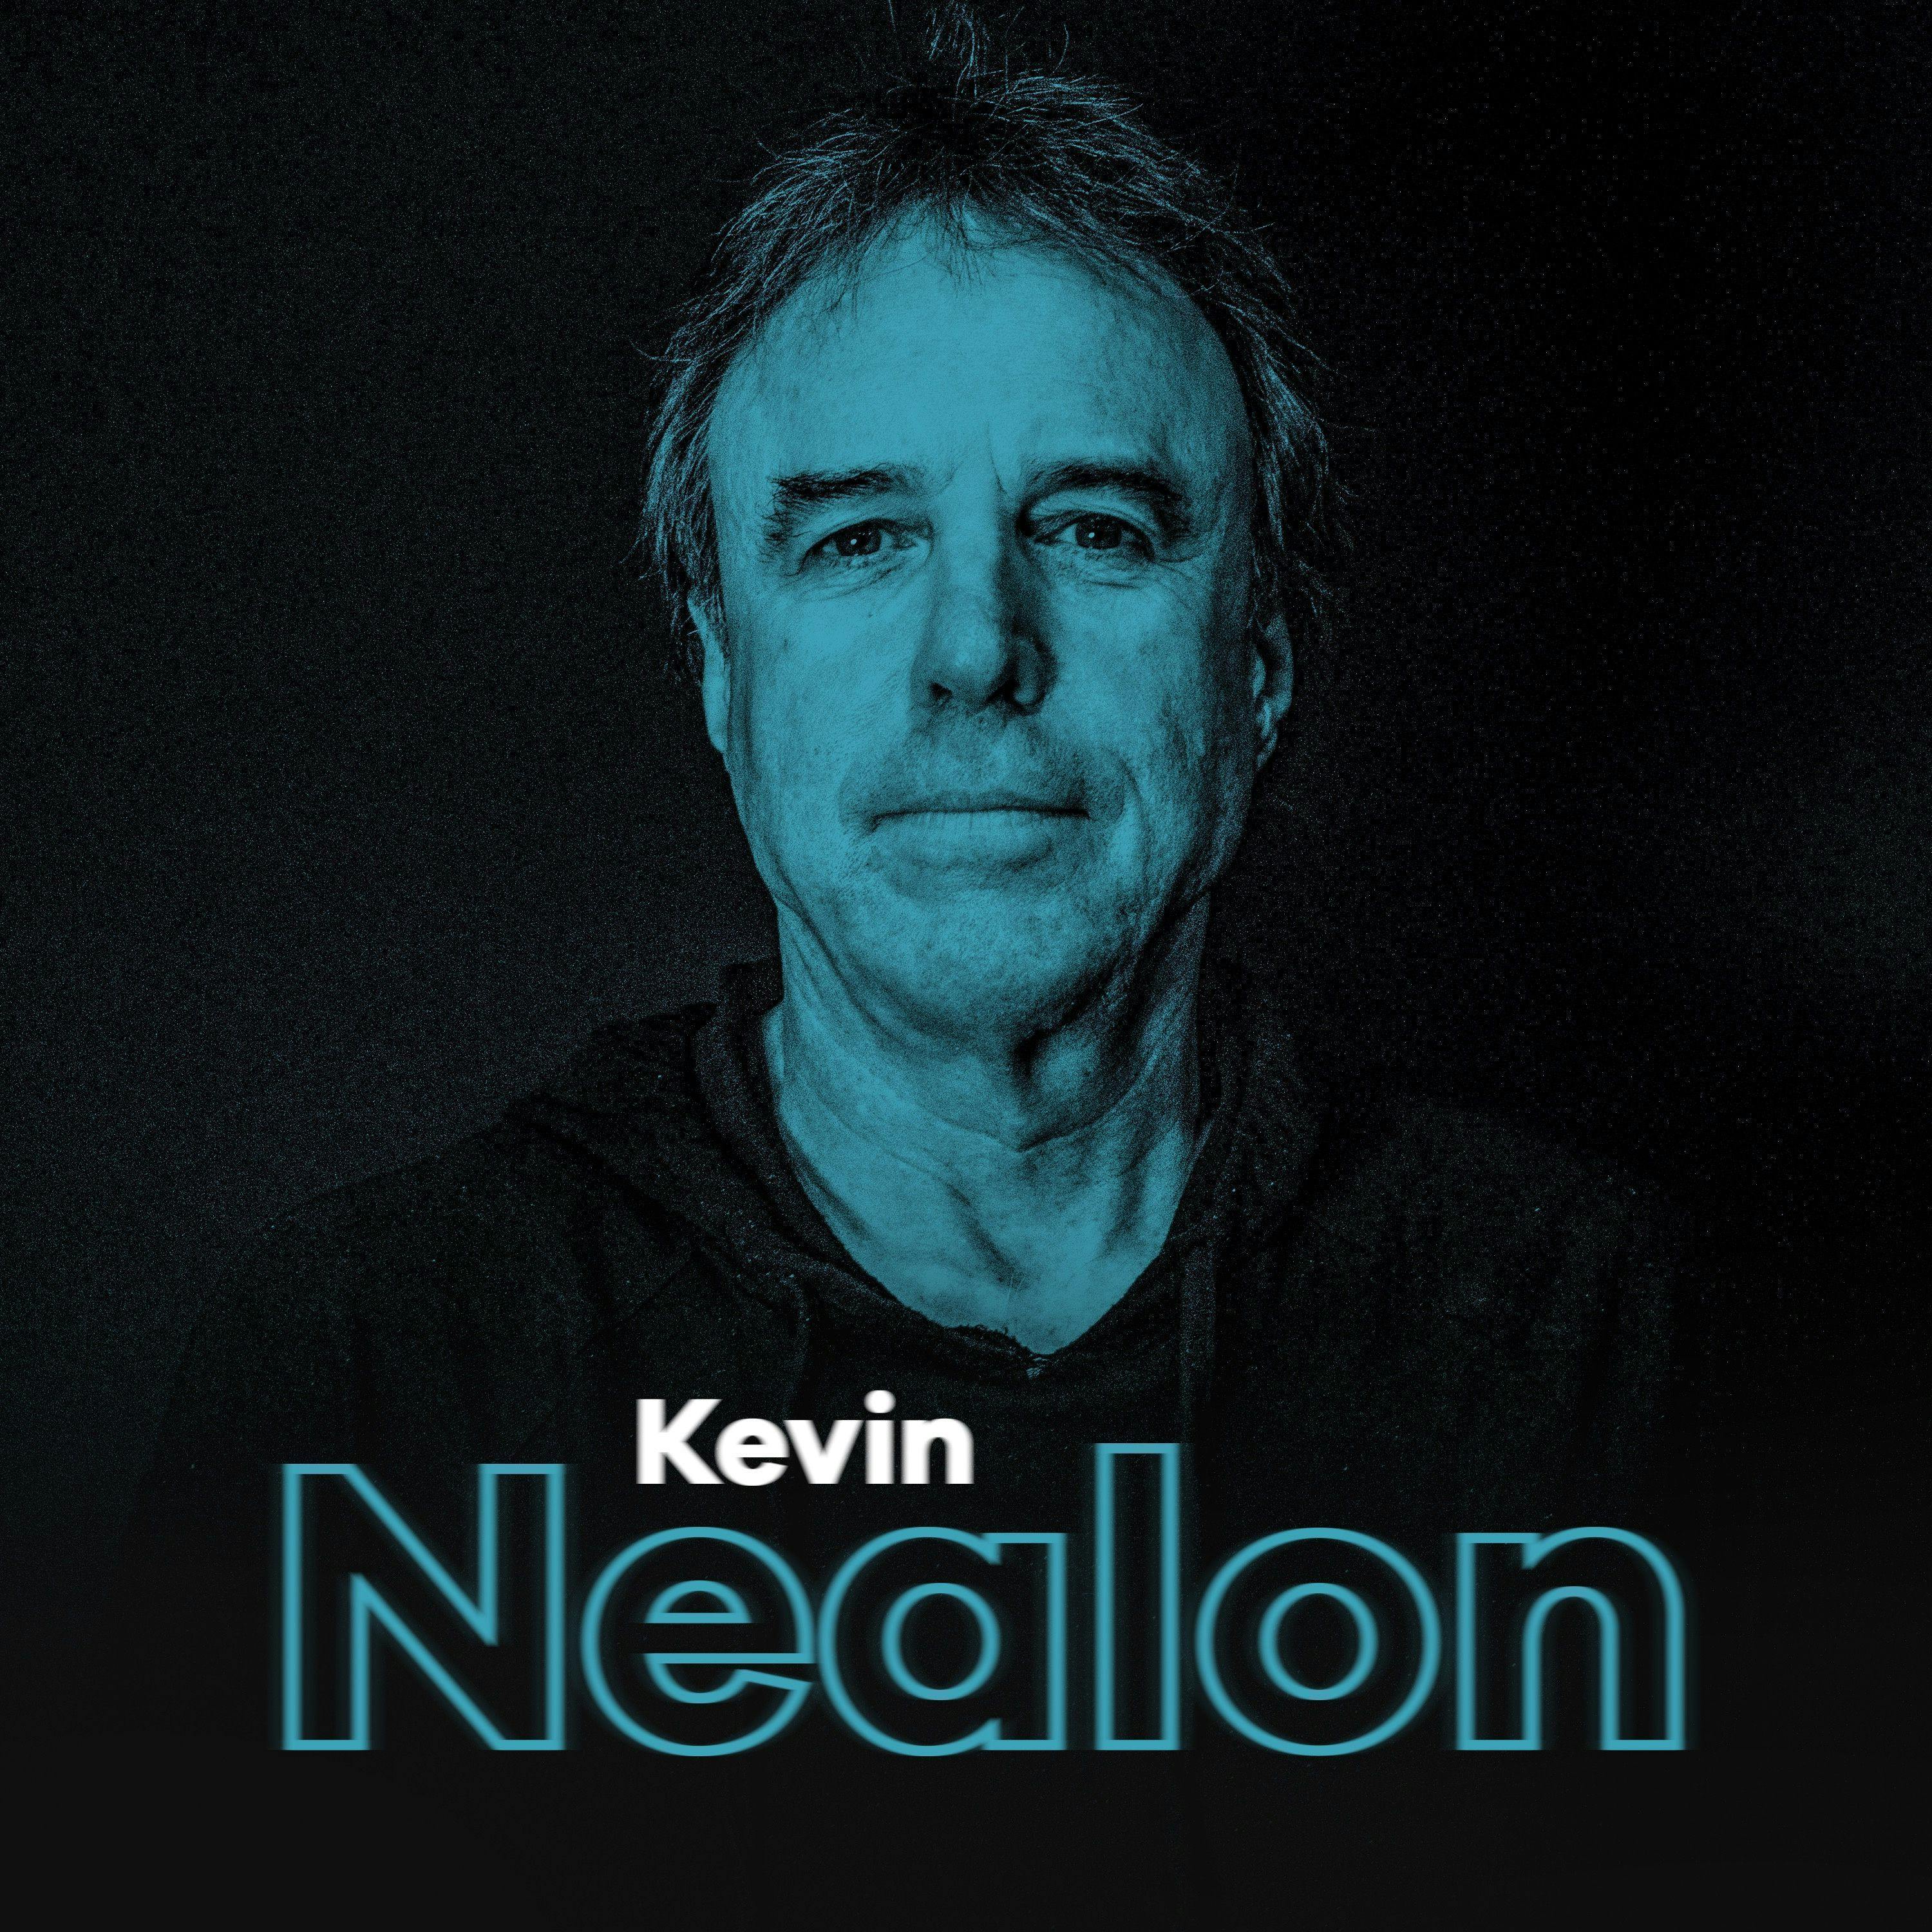 Kevin Nealon